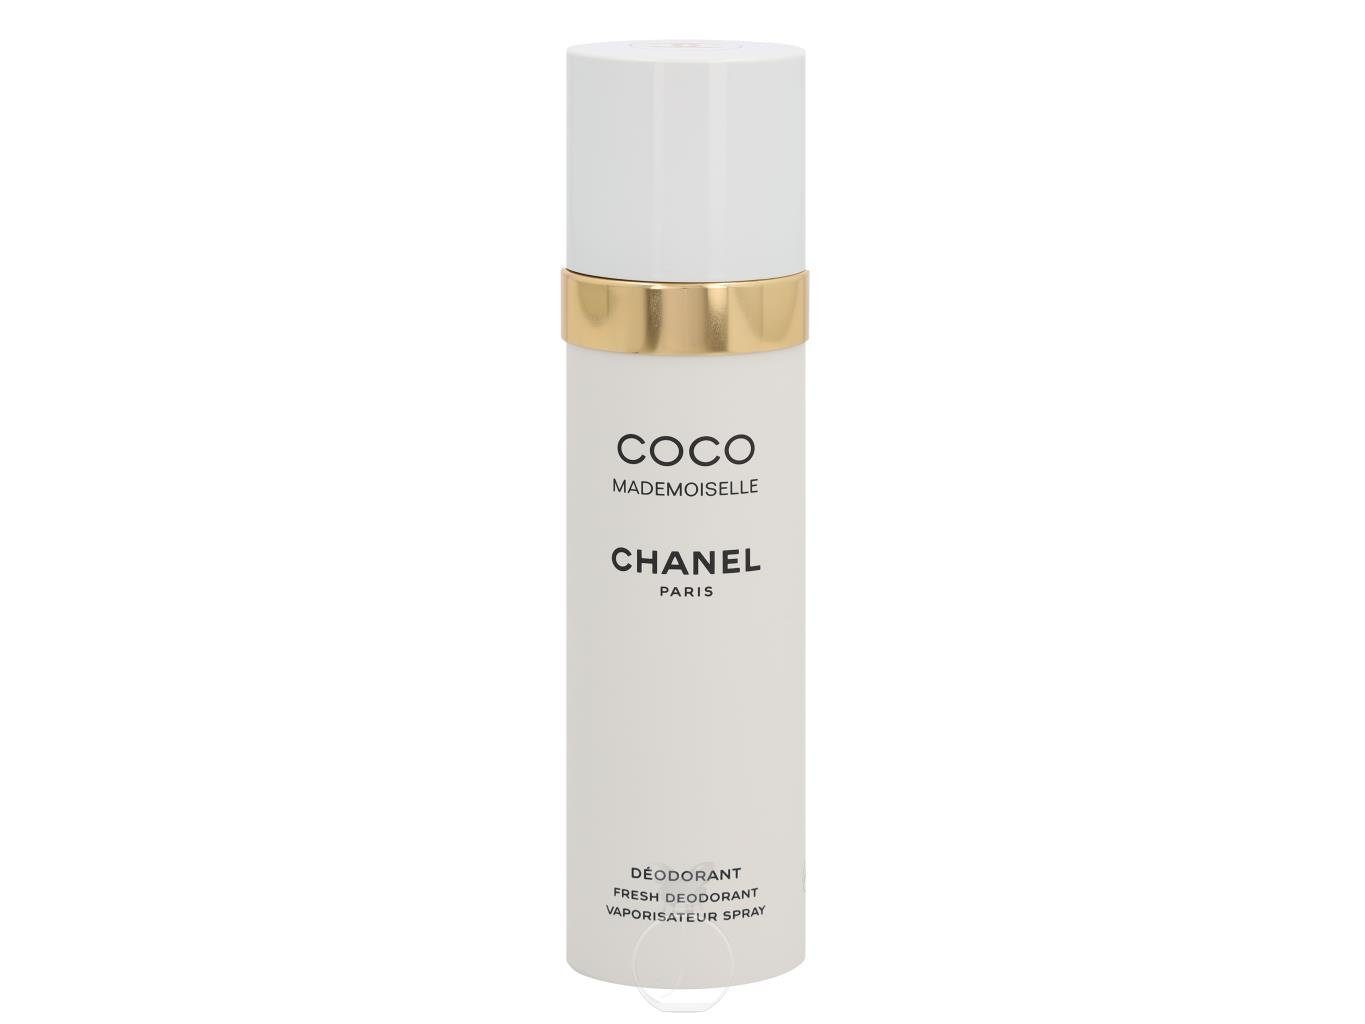 CHANEL Körperpflegeduft Chanel Coco Mademoiselle Deodorant 100 ml | Körpersprays